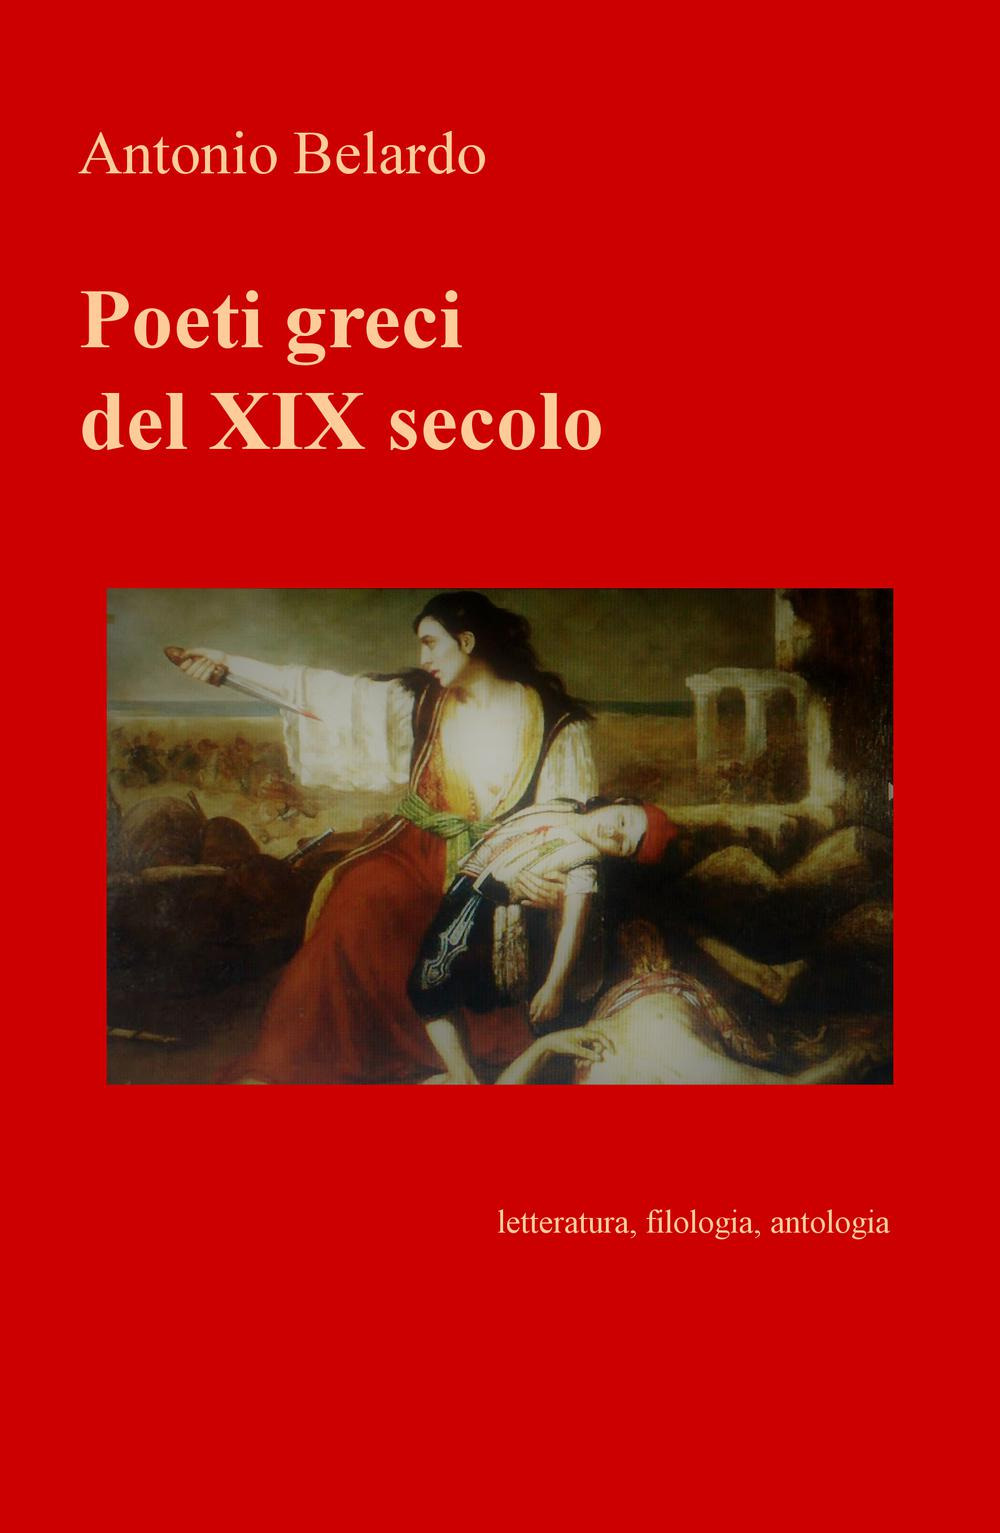 Image of Poeti greci del XIX secolo. Letteratura, filologia, antologia